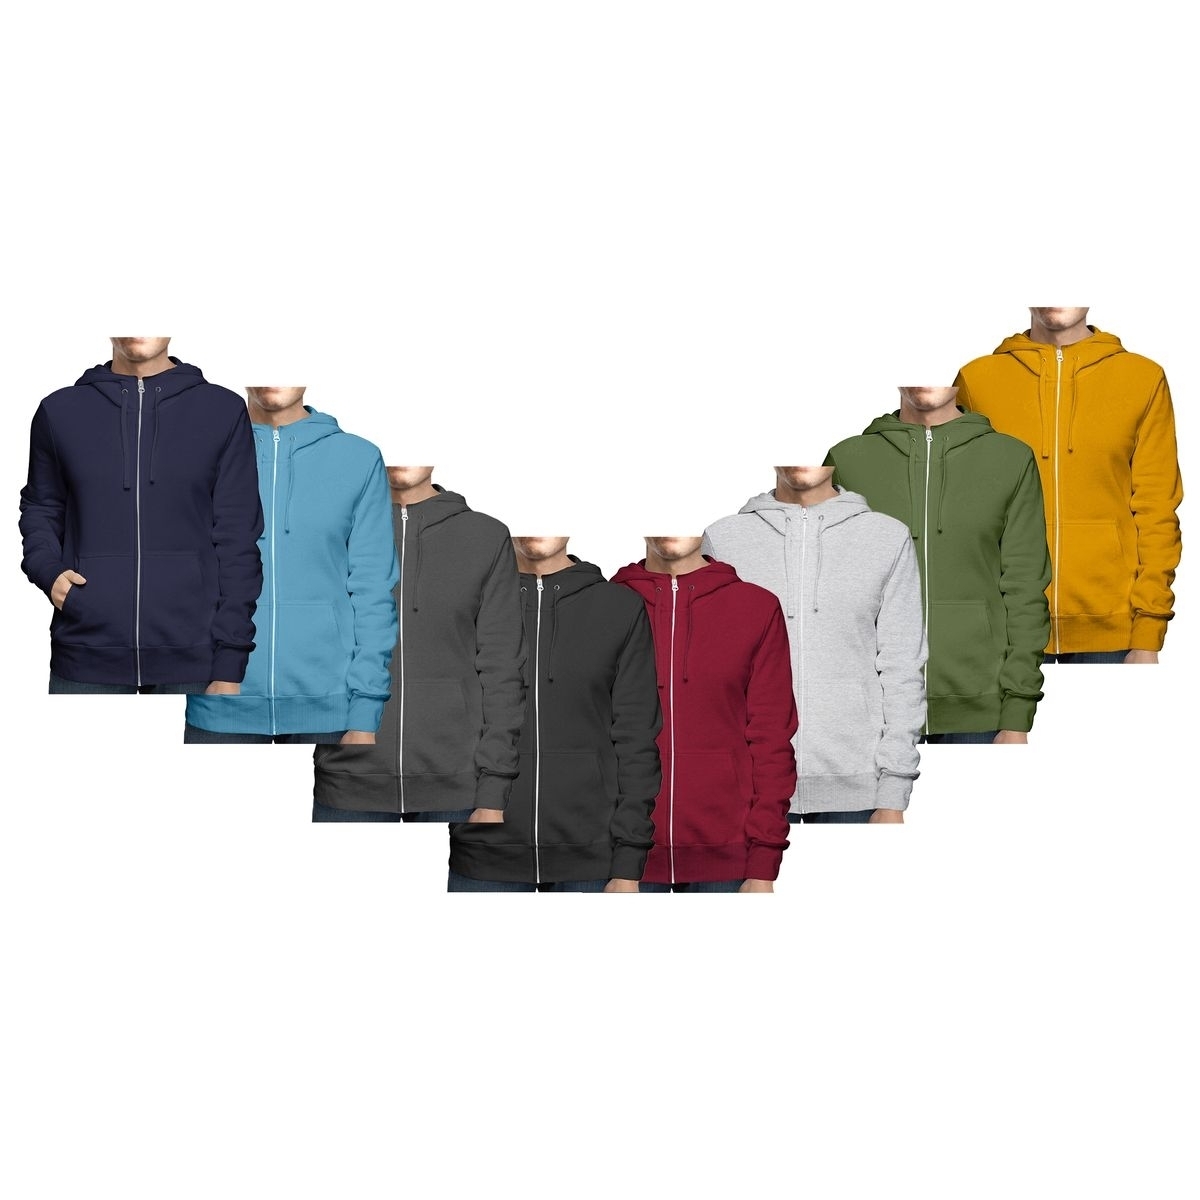 Men's Winter Warm Cozy Full Zip-Up Fleece Lined Soft Hoodie Sweatshirt - Navy, Medium